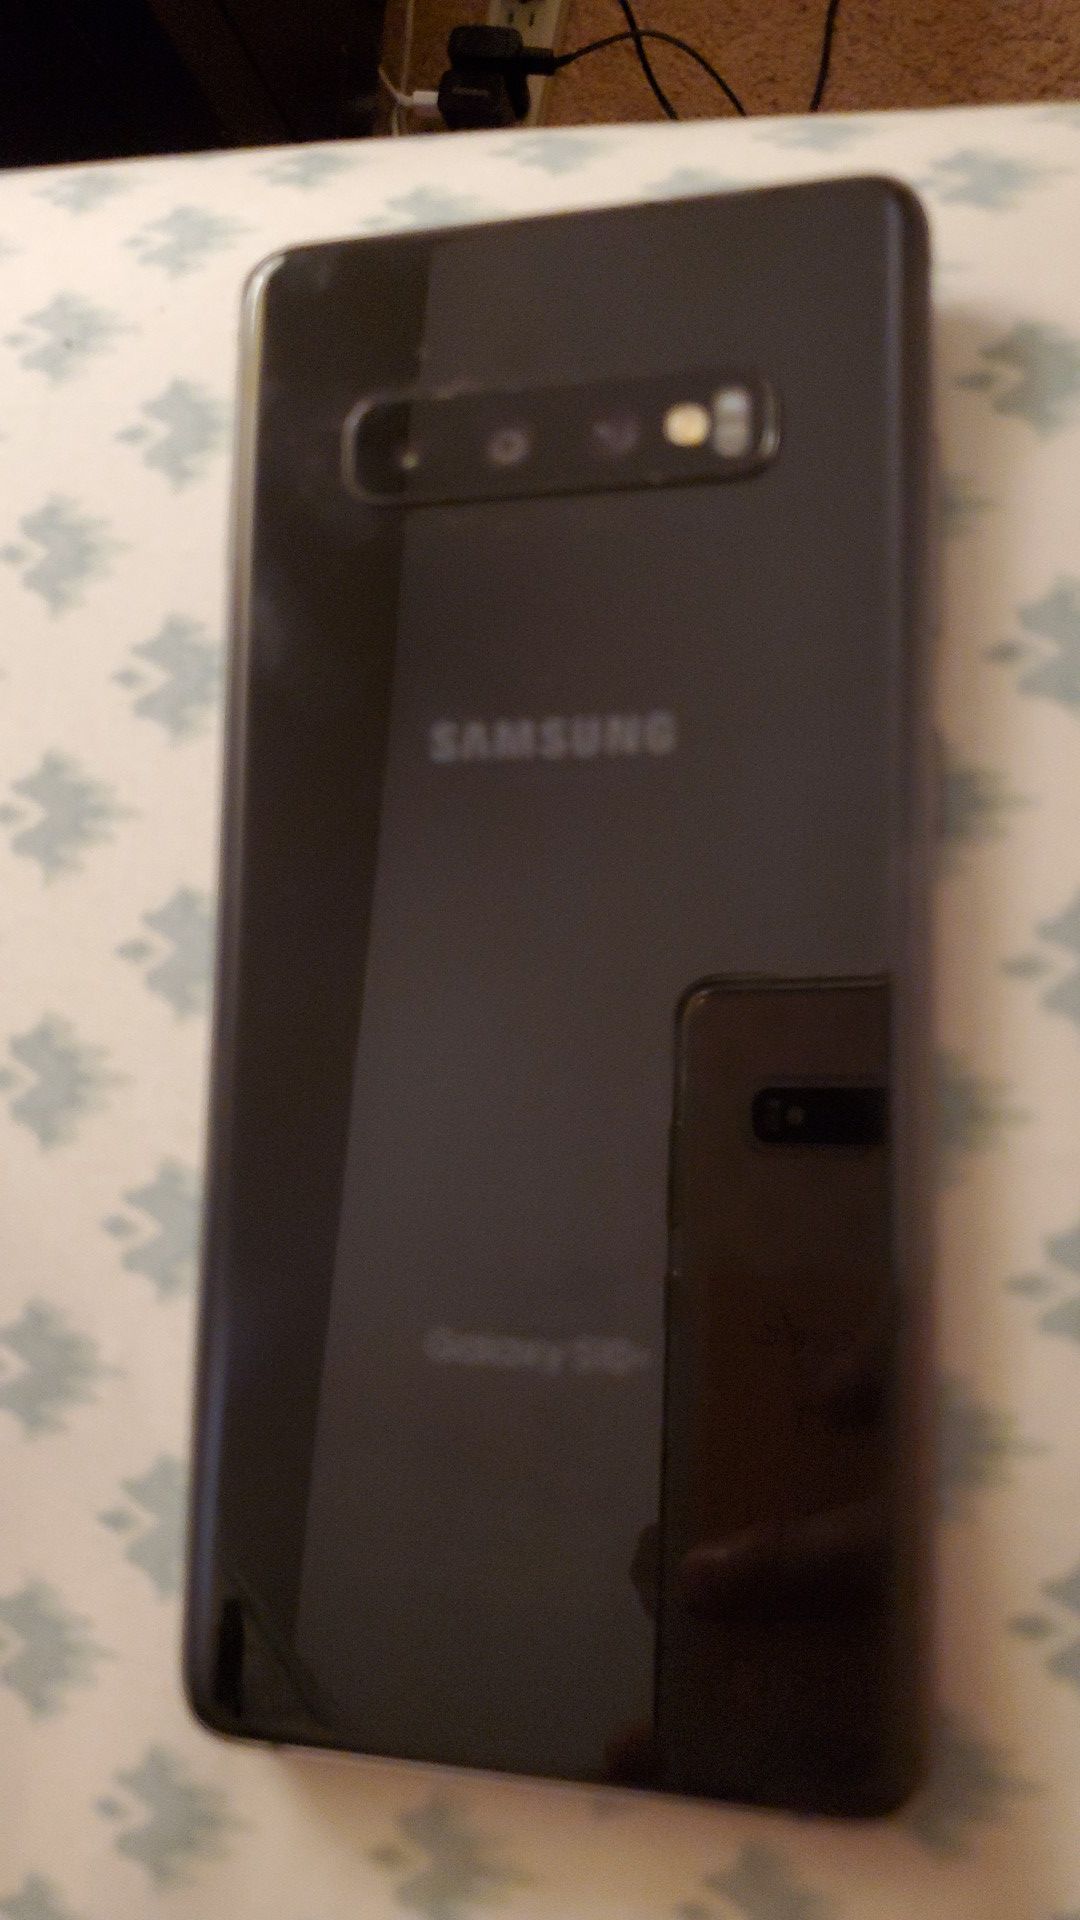 Samsung Galaxy S10+ Unlocked